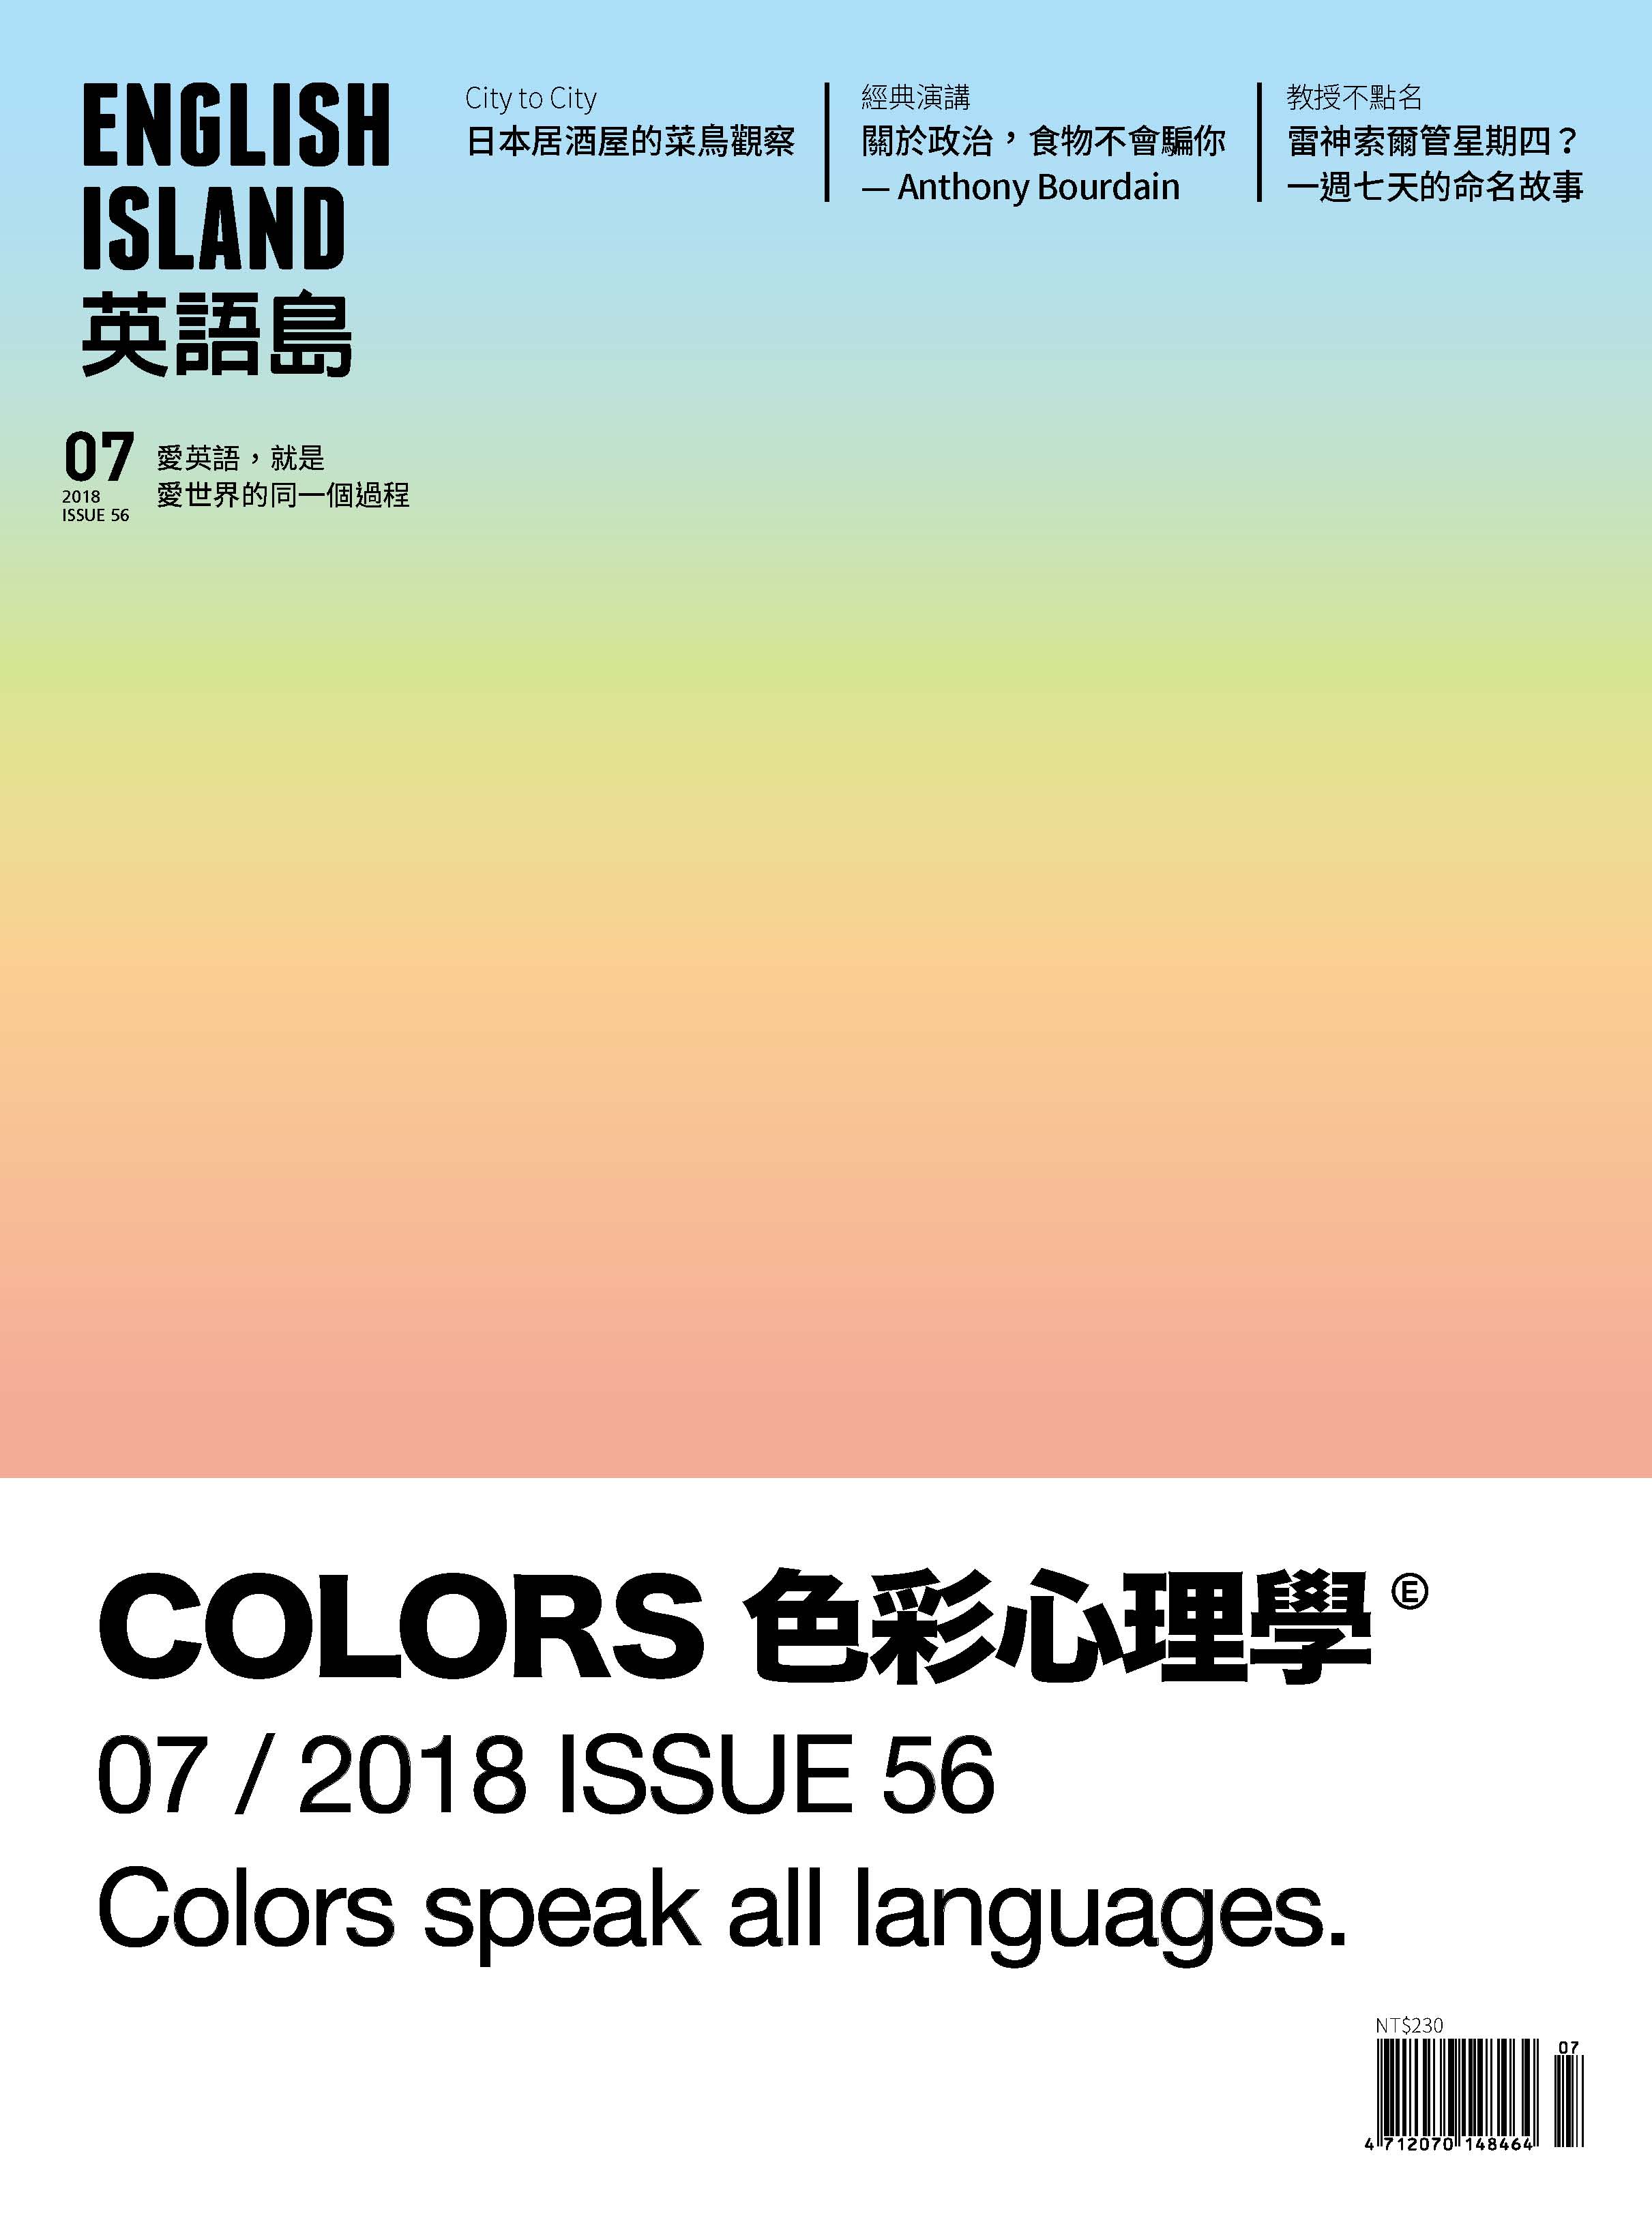 英語島 Vol.56 07/2018 色彩心理學